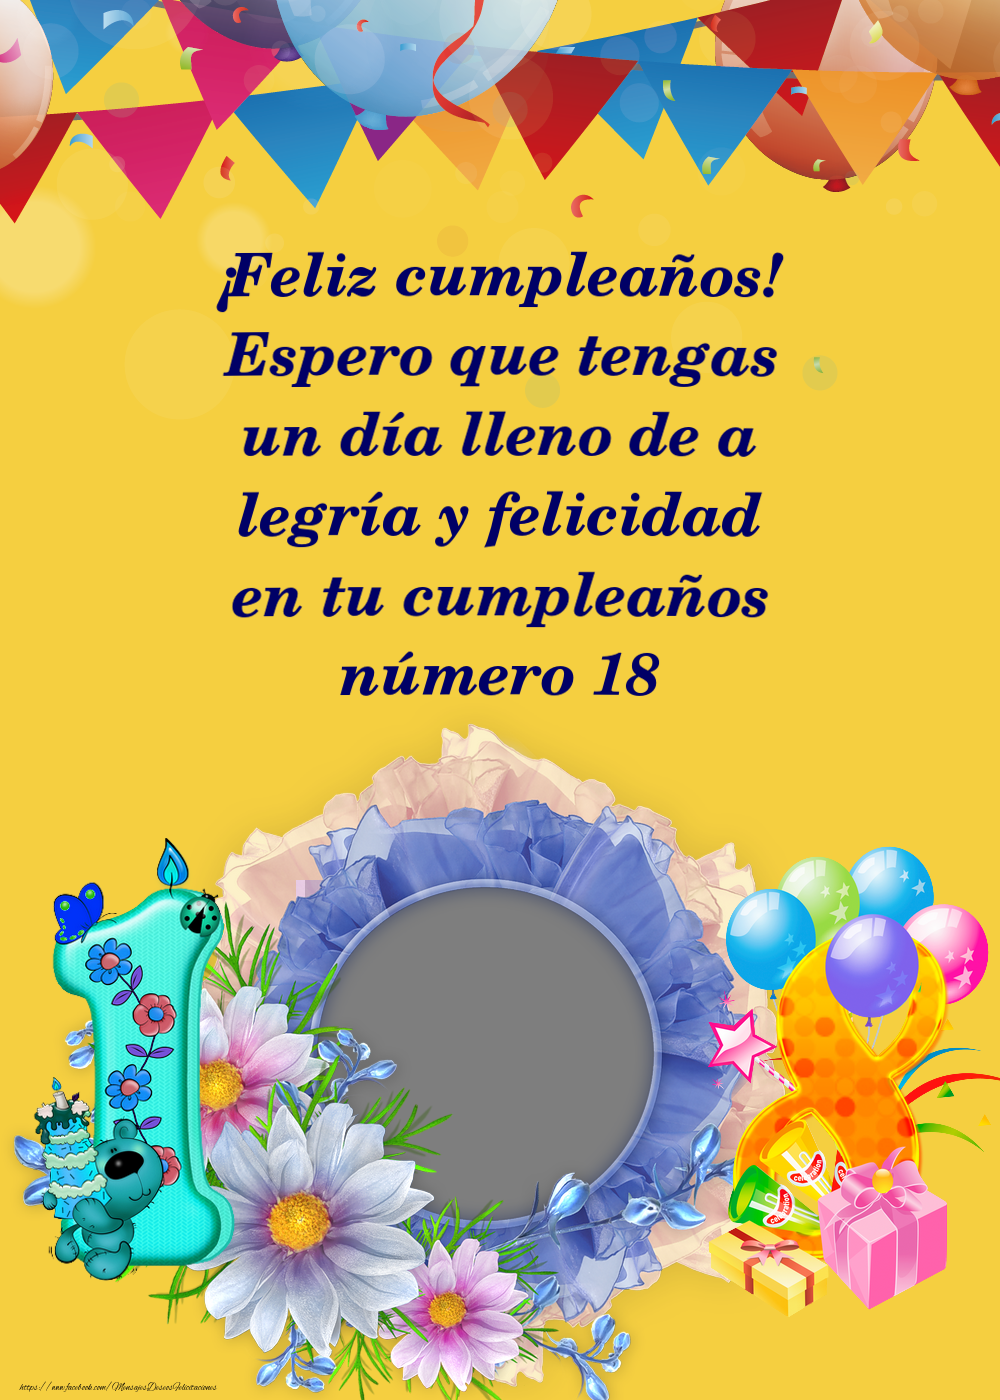 Felicitaciones Personalizadas de cumpleaños para 18 años - Celebremos - Marco de fotos con flores y los números uno y ocho